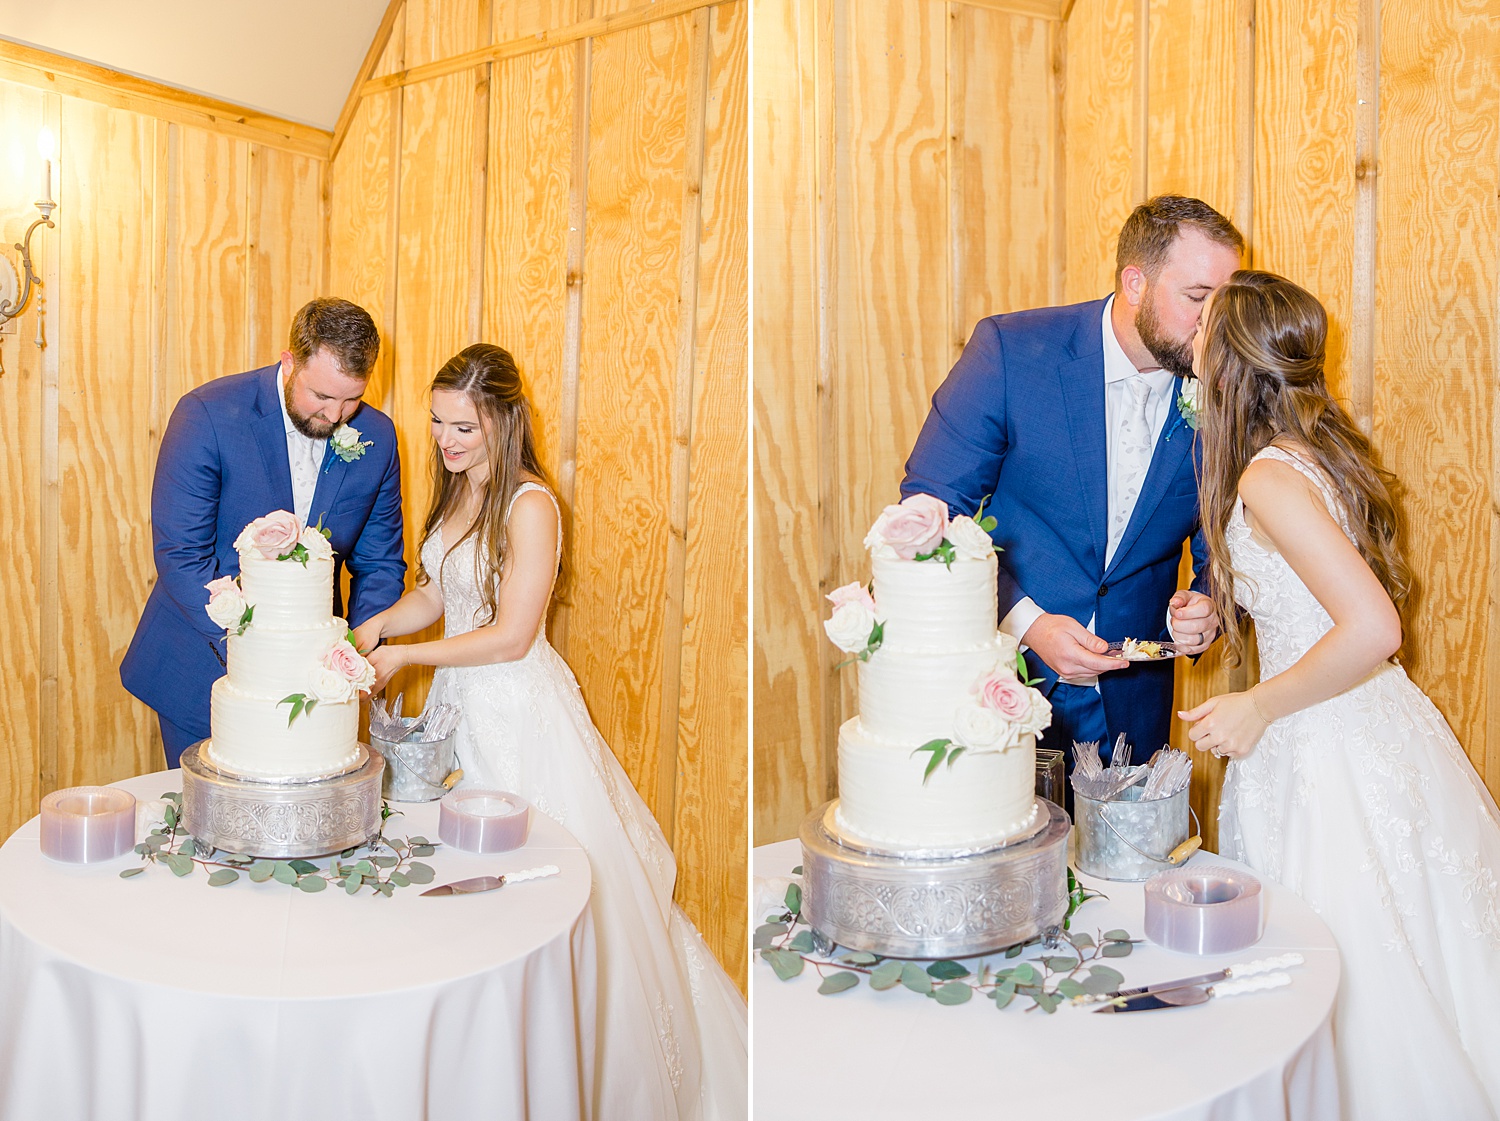 newlyweds cut their three tiered wedding cake 